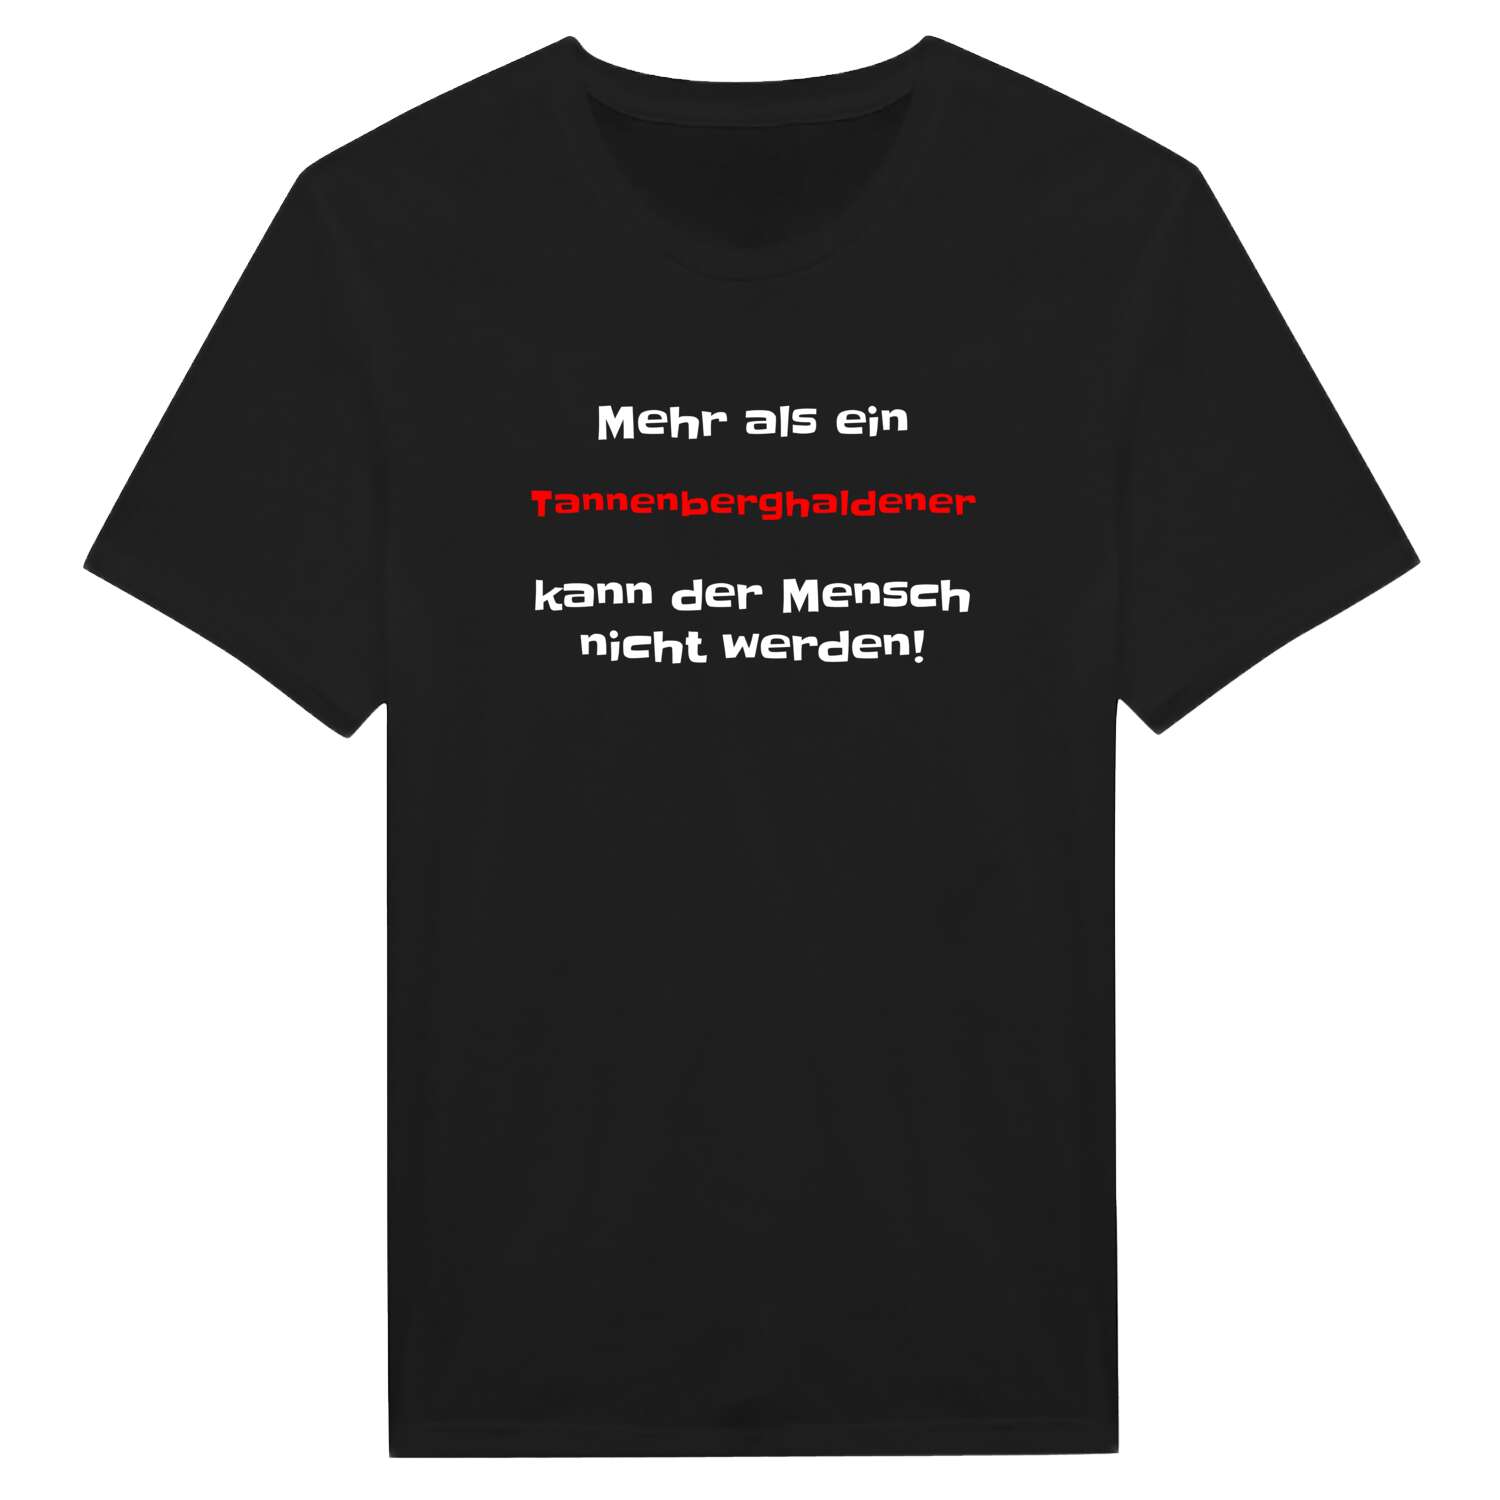 Tannenberghalden T-Shirt »Mehr als ein«